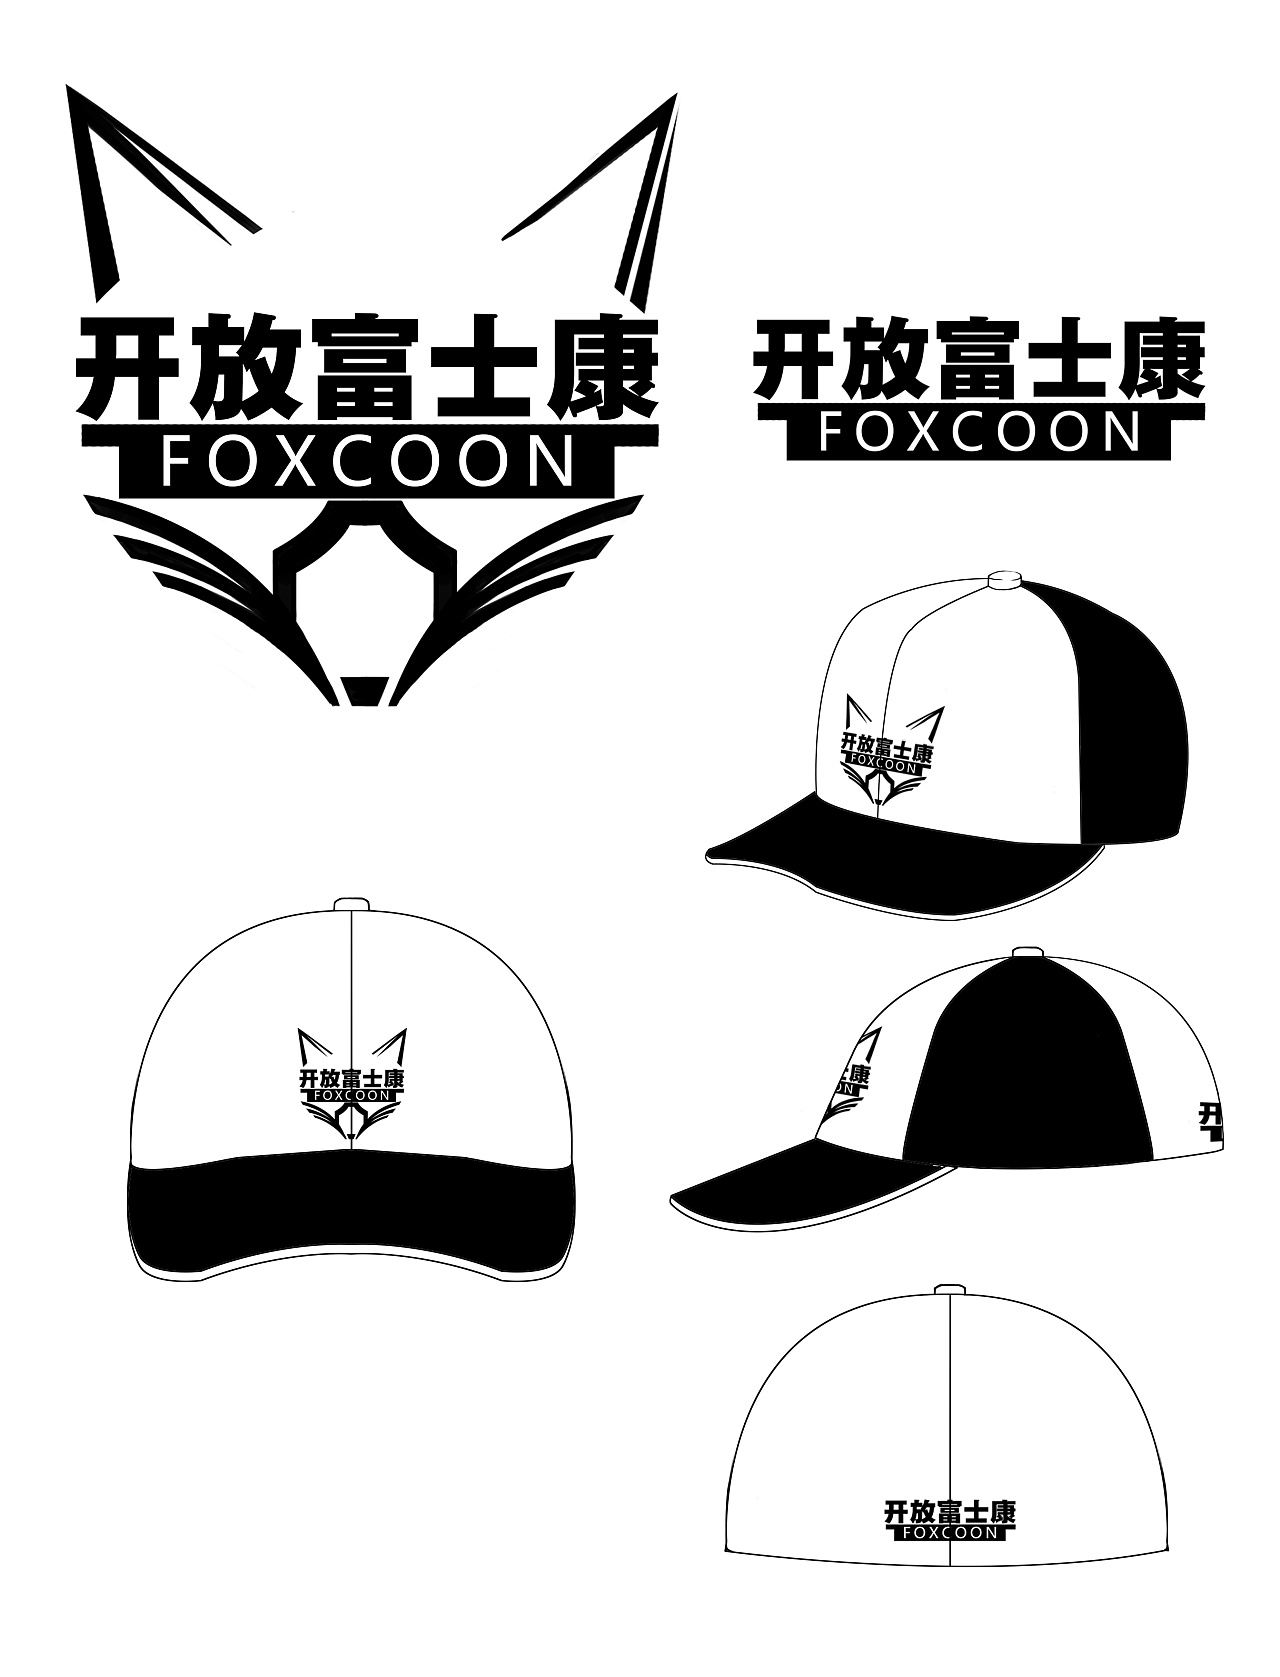 帽子上的logo图案设计图片